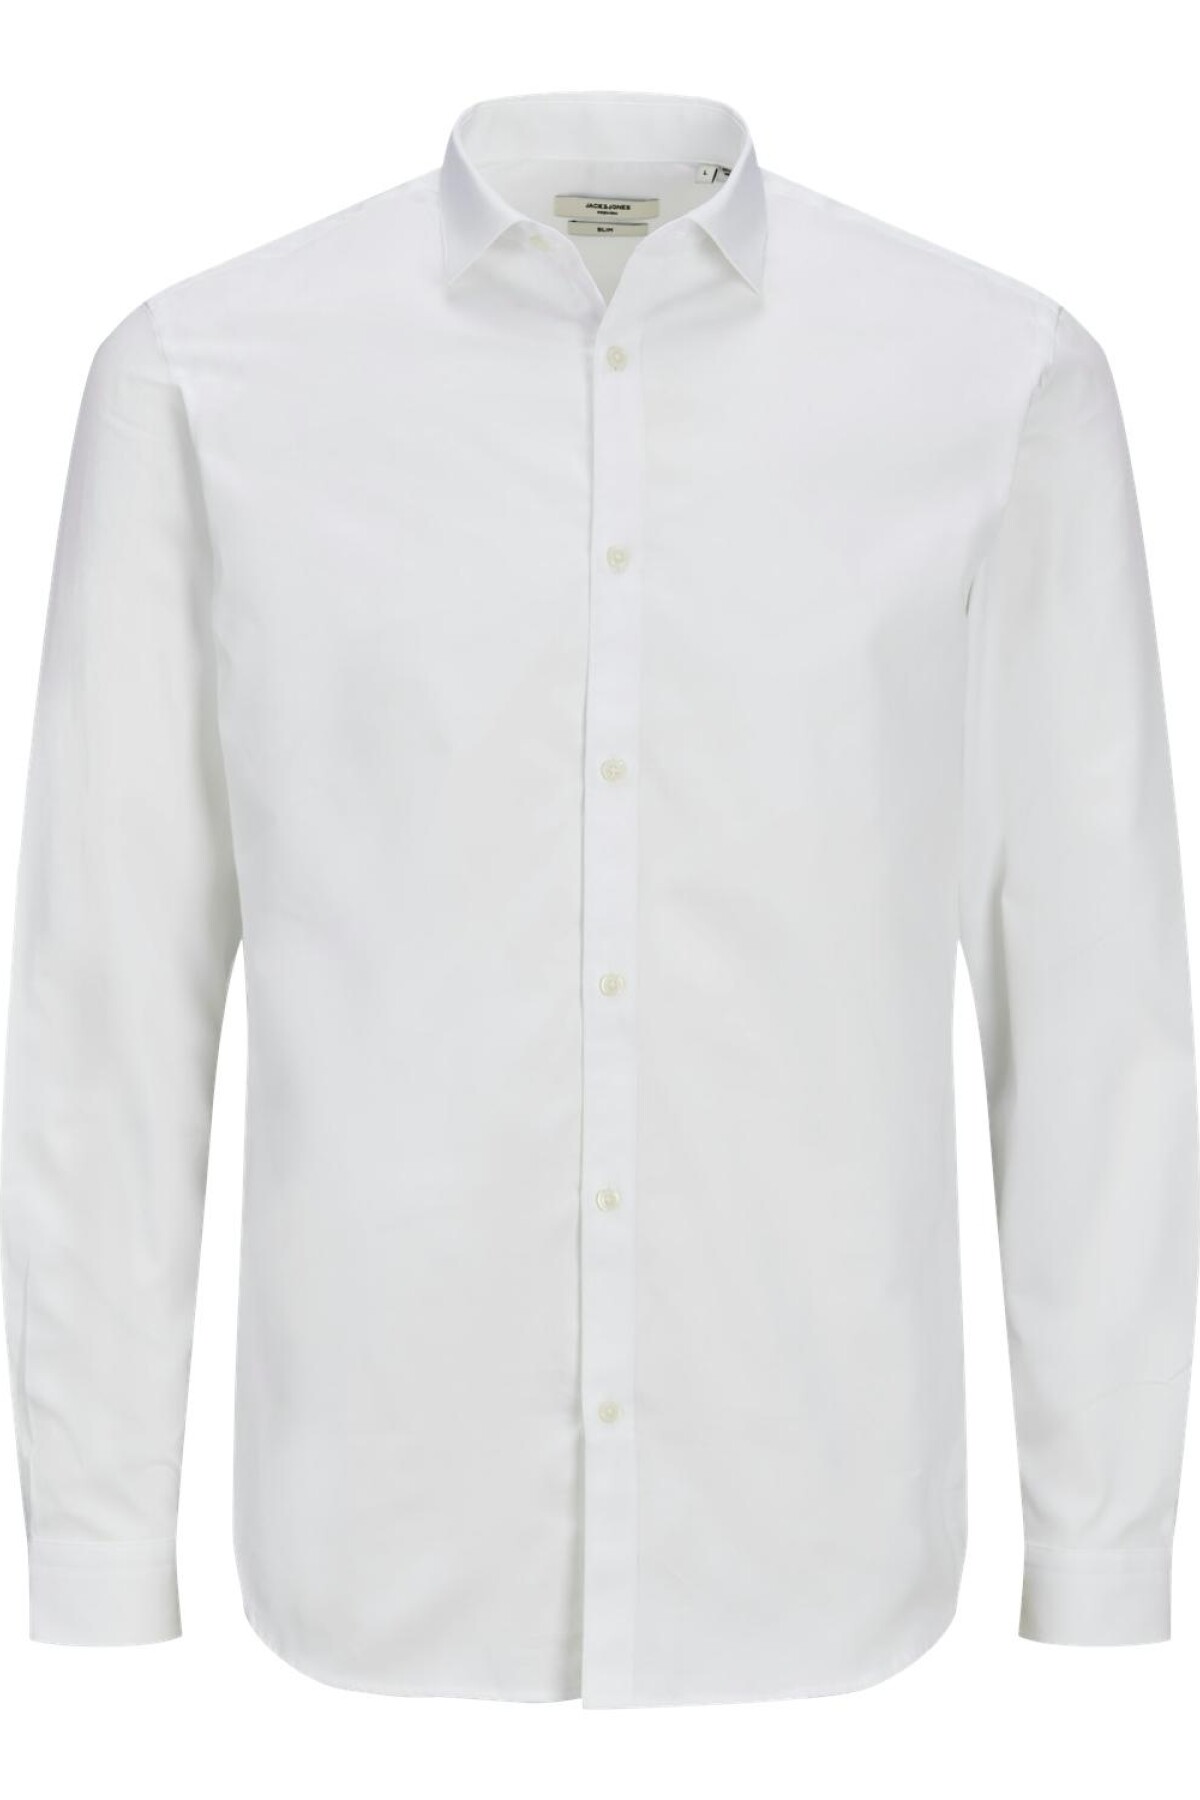 Camisa Cardif White